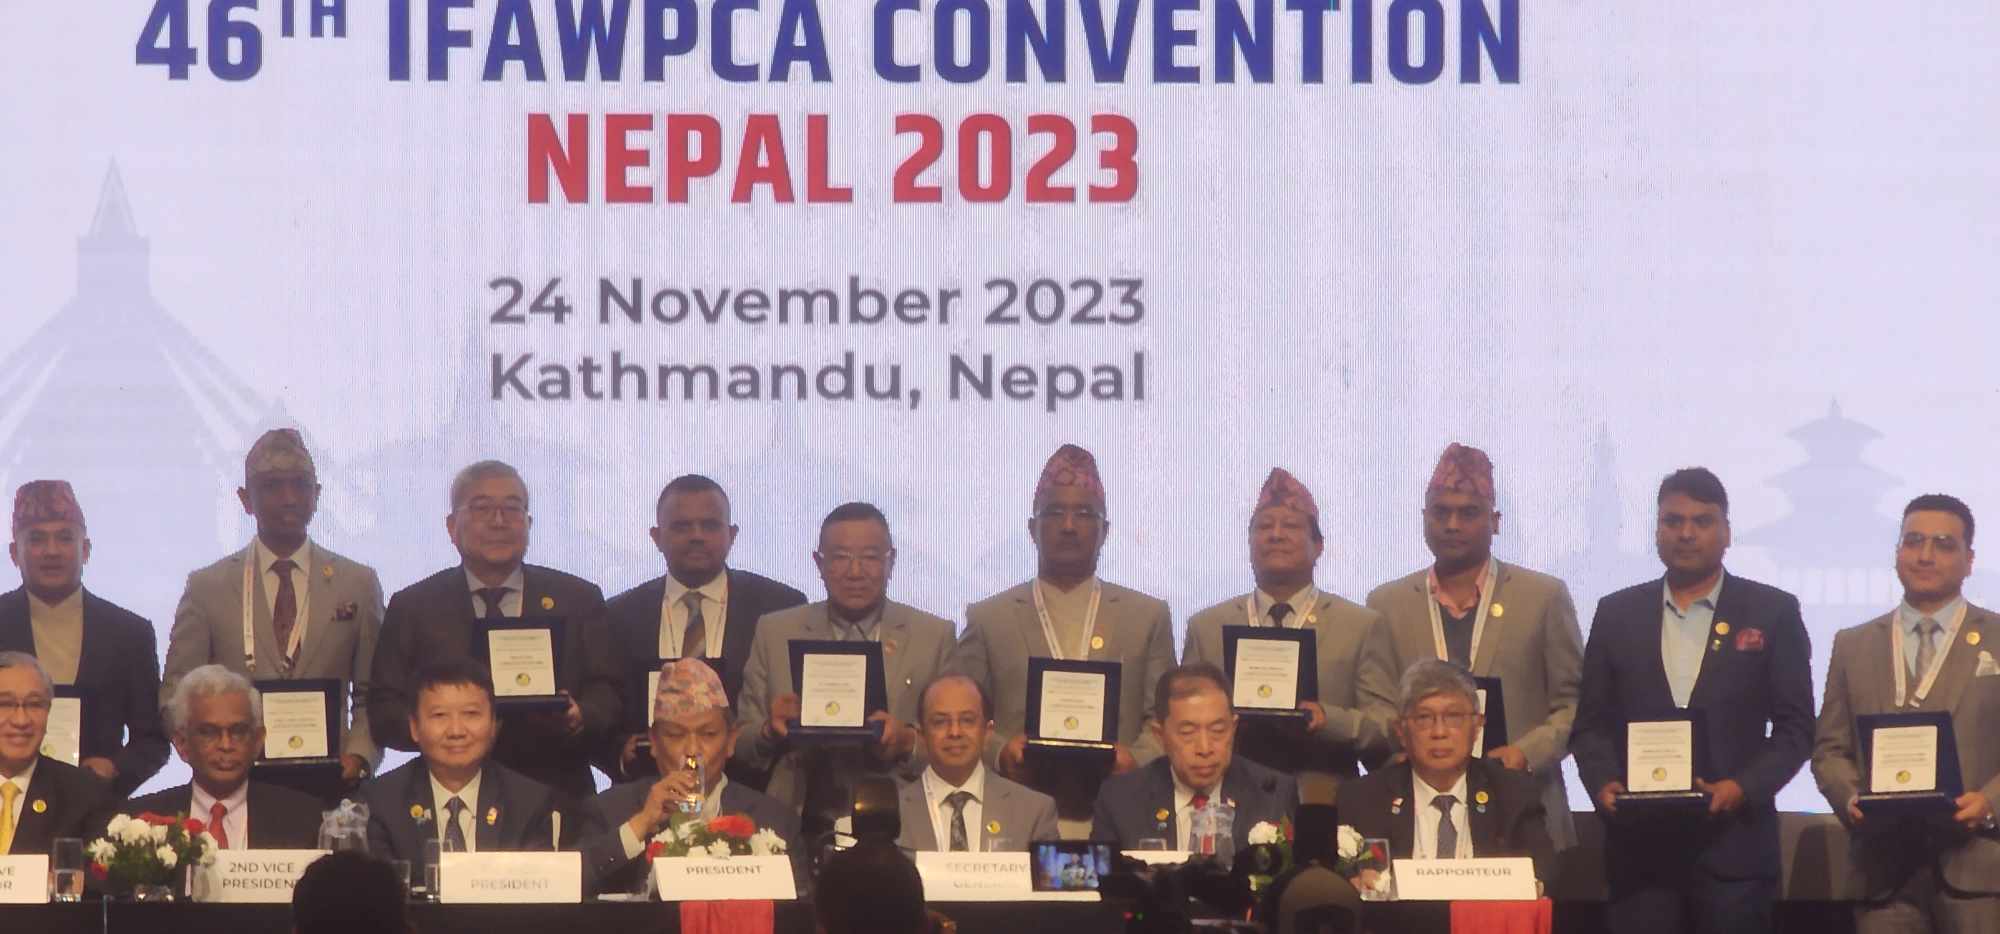 १४ बुँदे काठमाडौँ घोषणापत्र जारी गर्दै इफाप्का सम्मेलन सम्पन्न, ४७ औँ सम्मेलन सिंगापुरमा हुने